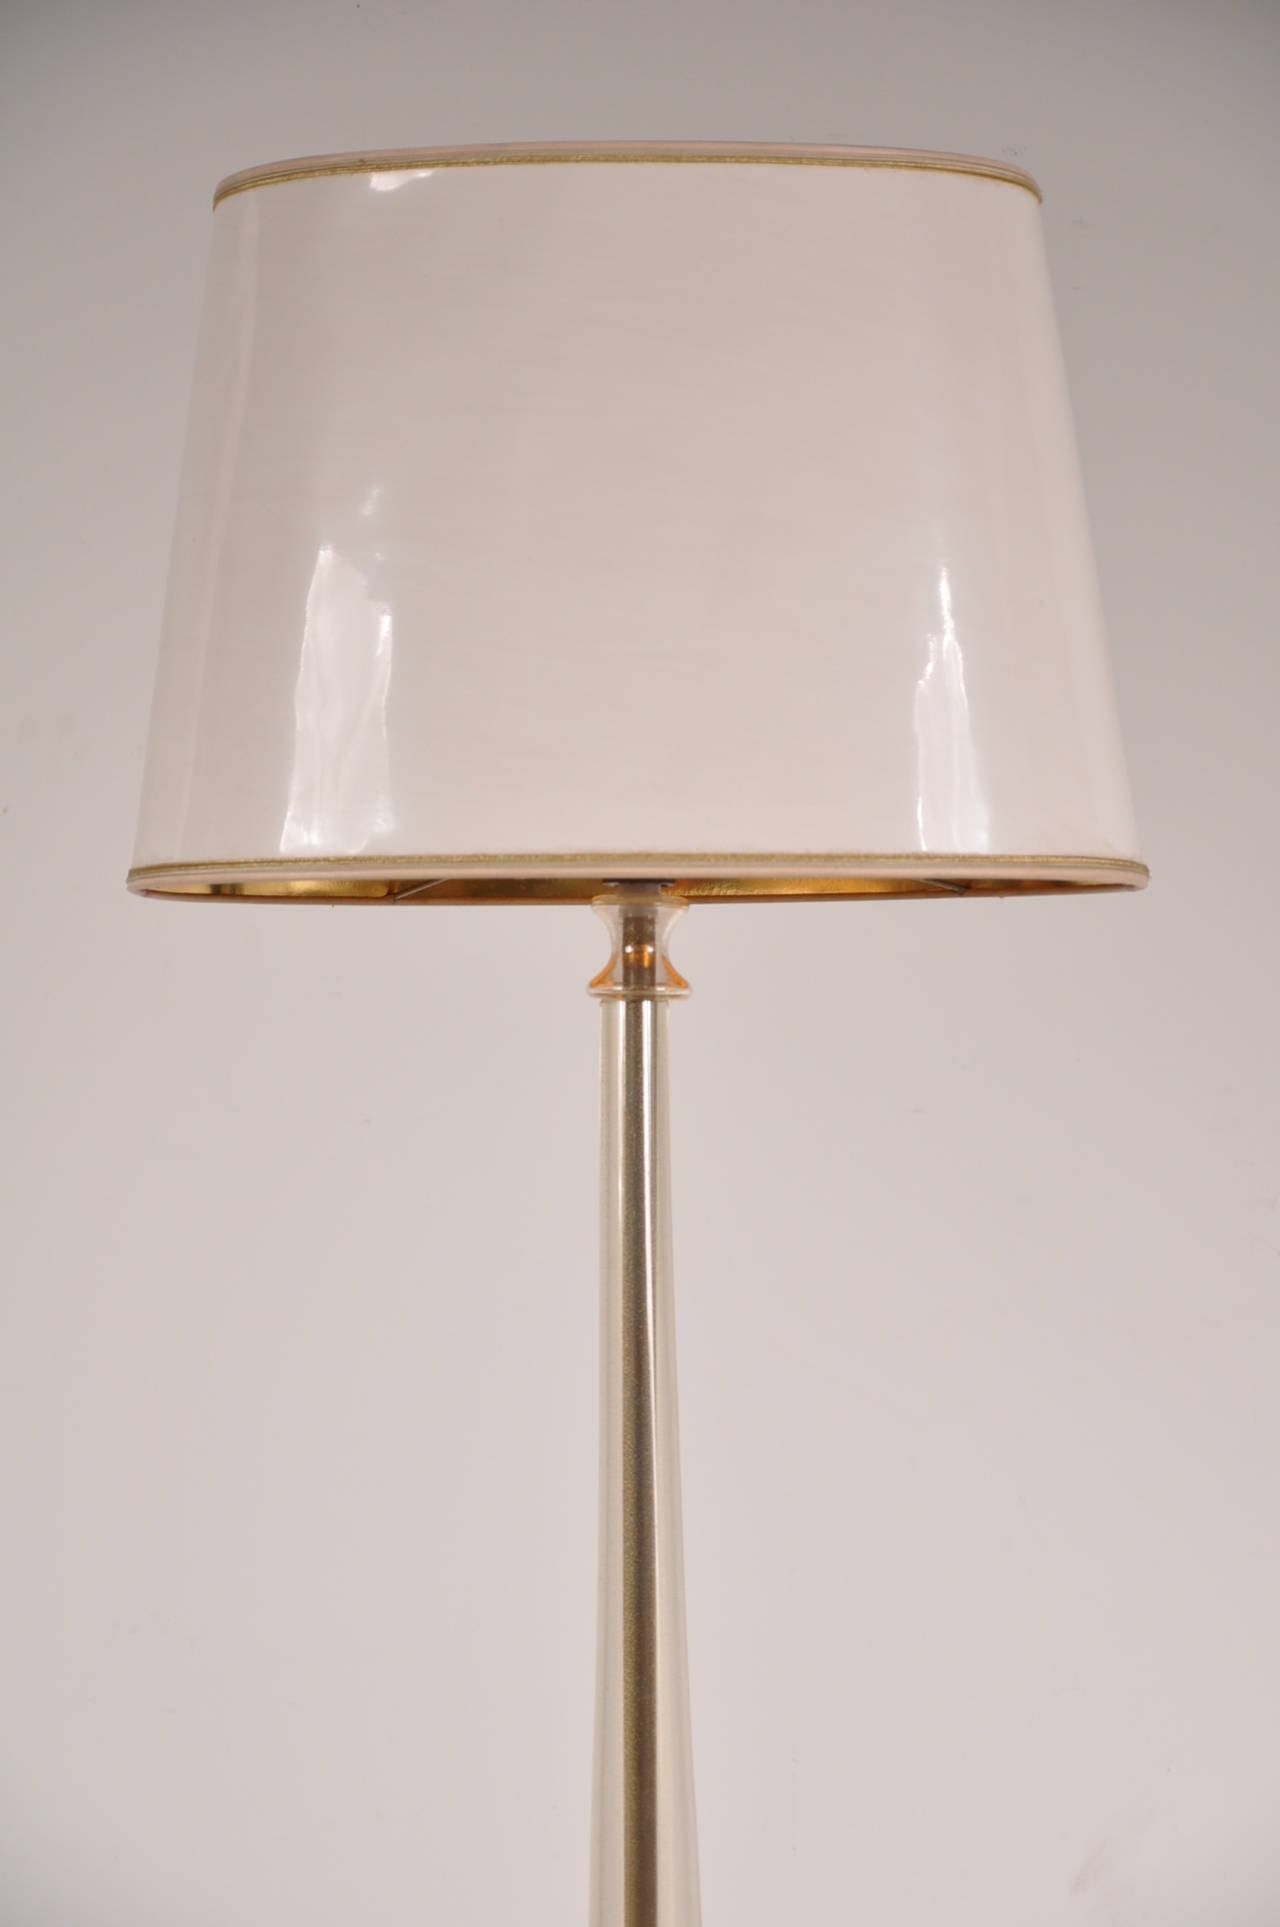 Superbe lampadaire en verre de Murano dans le style de Barovier e Toso, fabriqué en Italie vers 1940.

Sa base en laiton de conception unique est recouverte de verre de Murano, ce qui donne à cette lampe son aspect élégant. Il est doté d'une